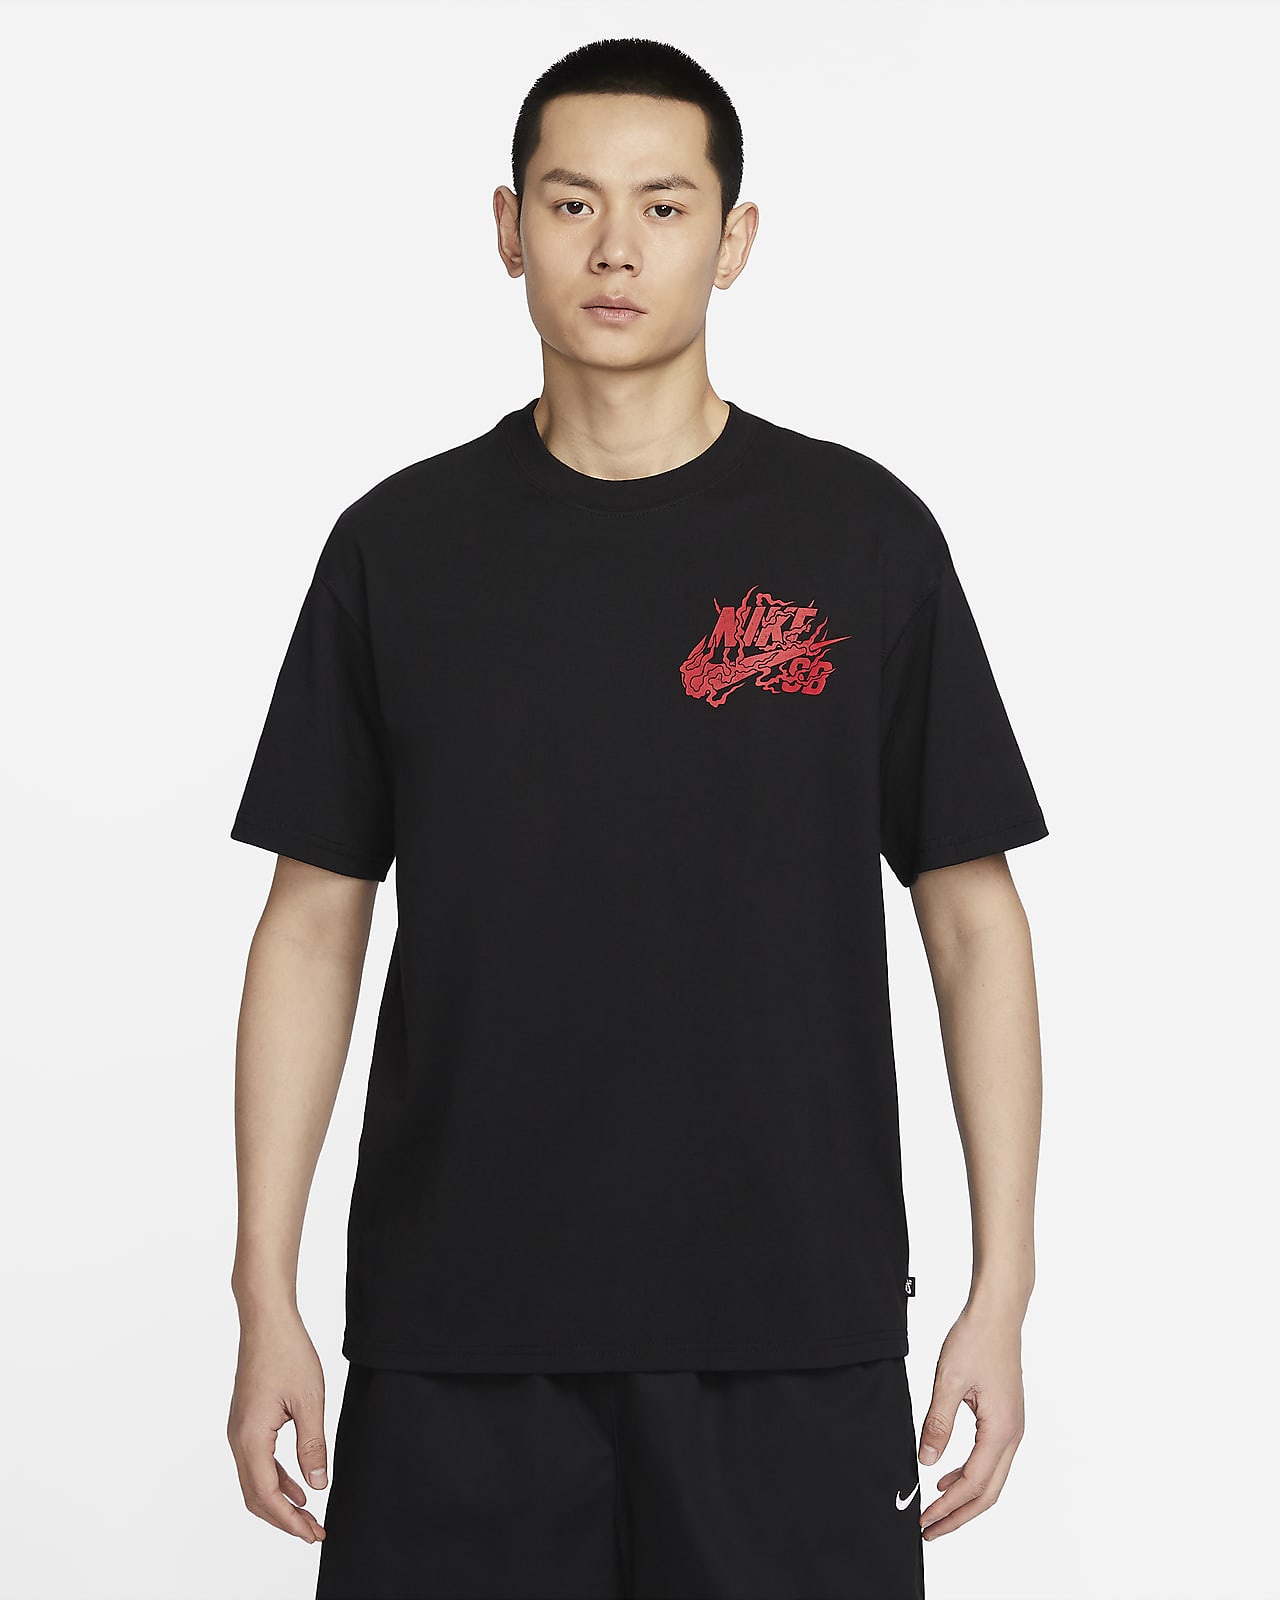 NIKE公式】ナイキ SB スケートボード Tシャツ.オンラインストア (通販